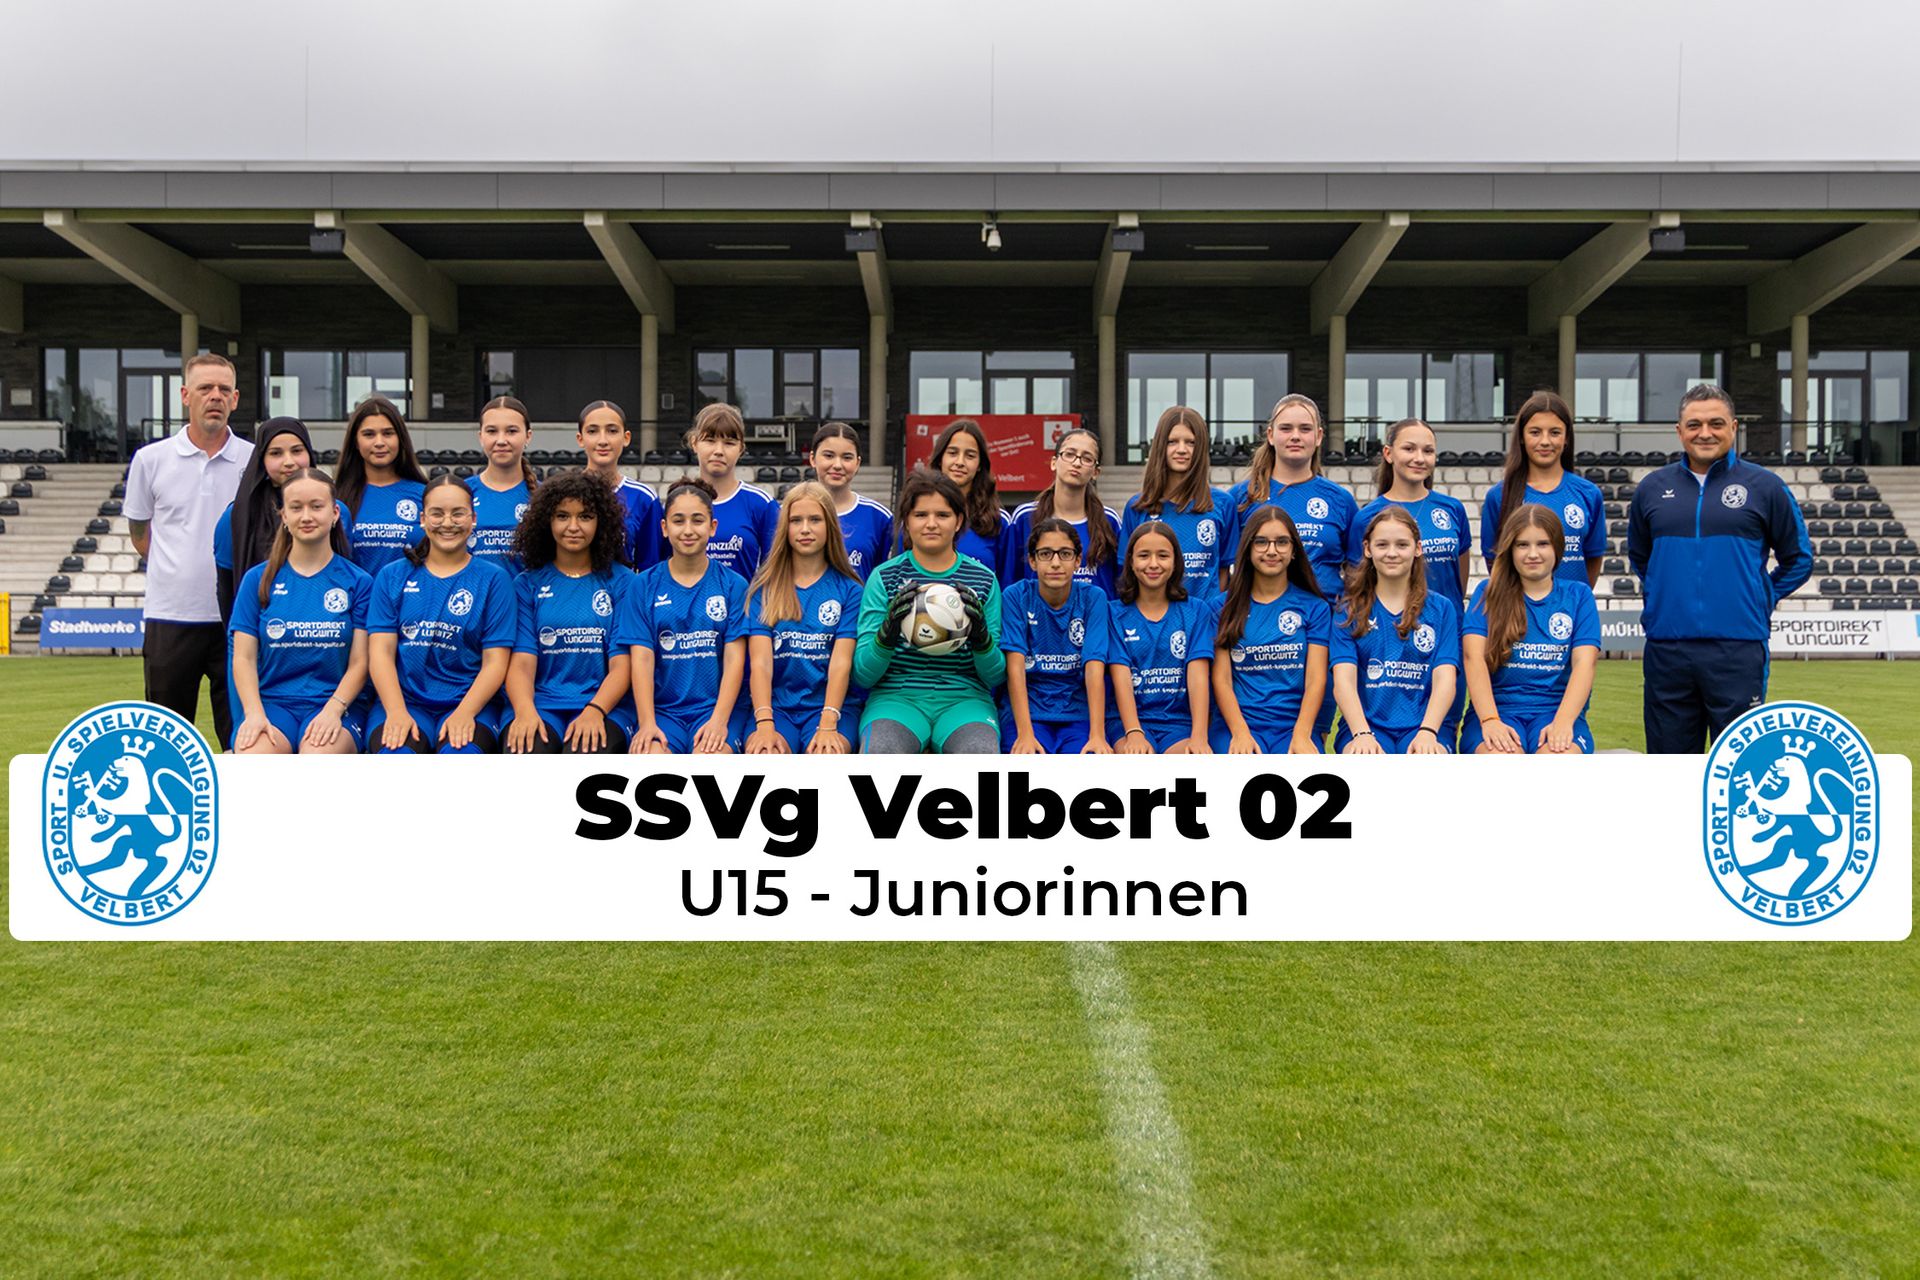 Mannschaftsfoto U15 - Juniorinnen